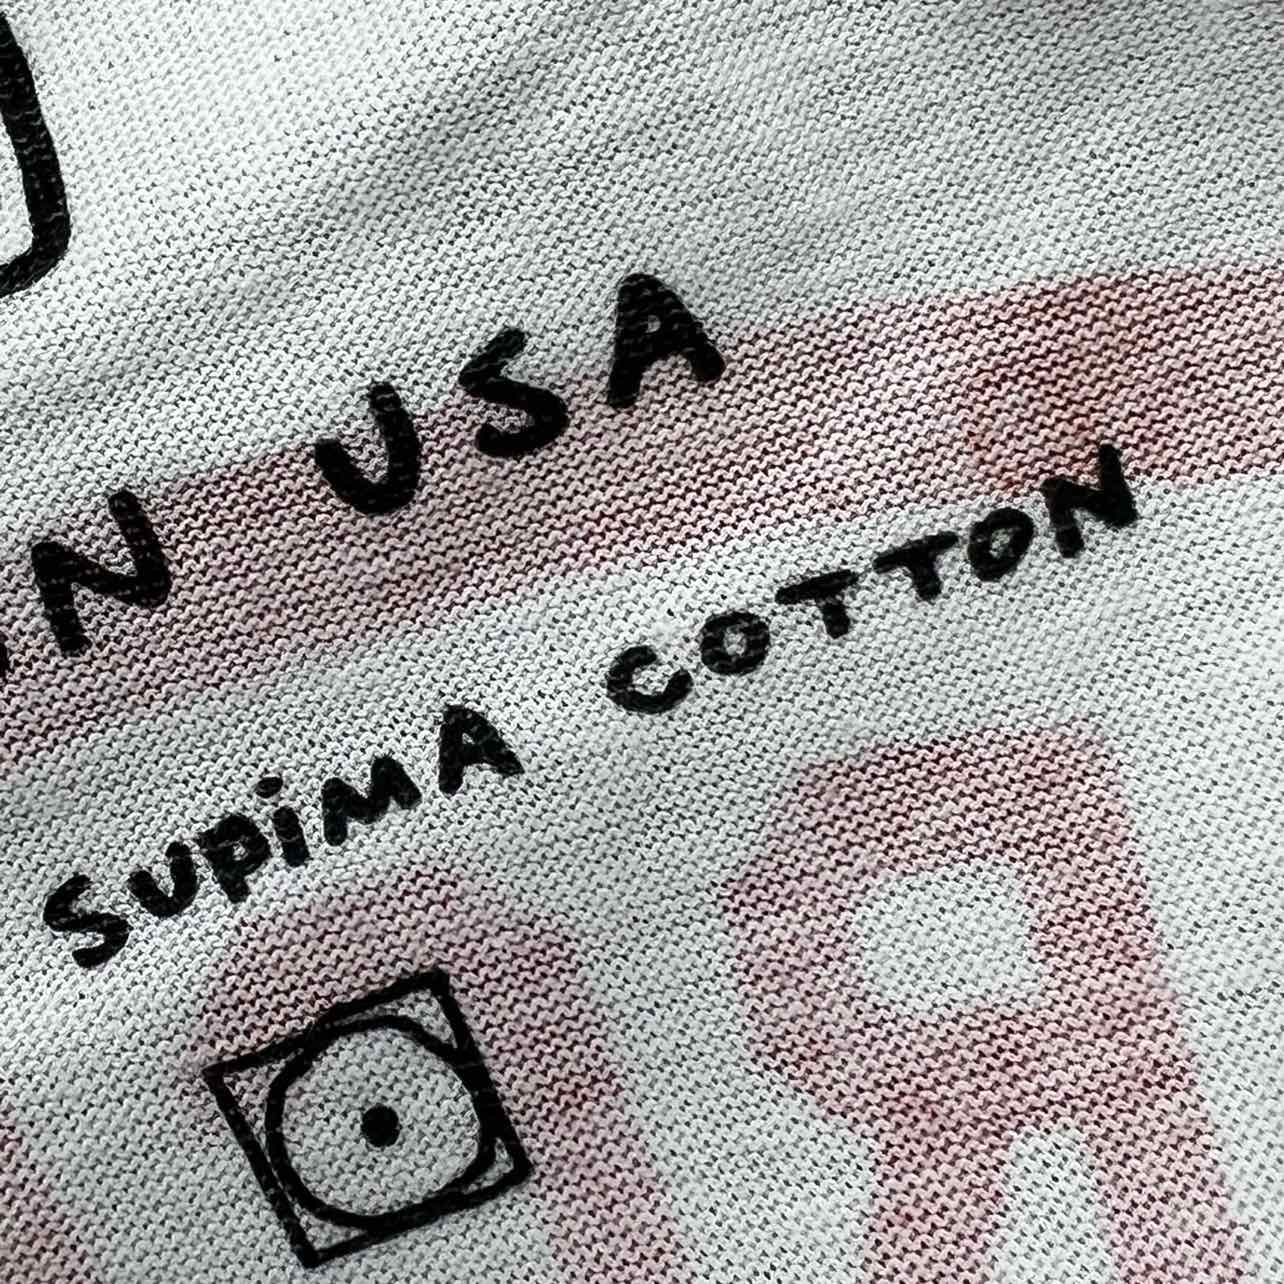 Tom Sachs T-Shirt "VESTA" White New Size M